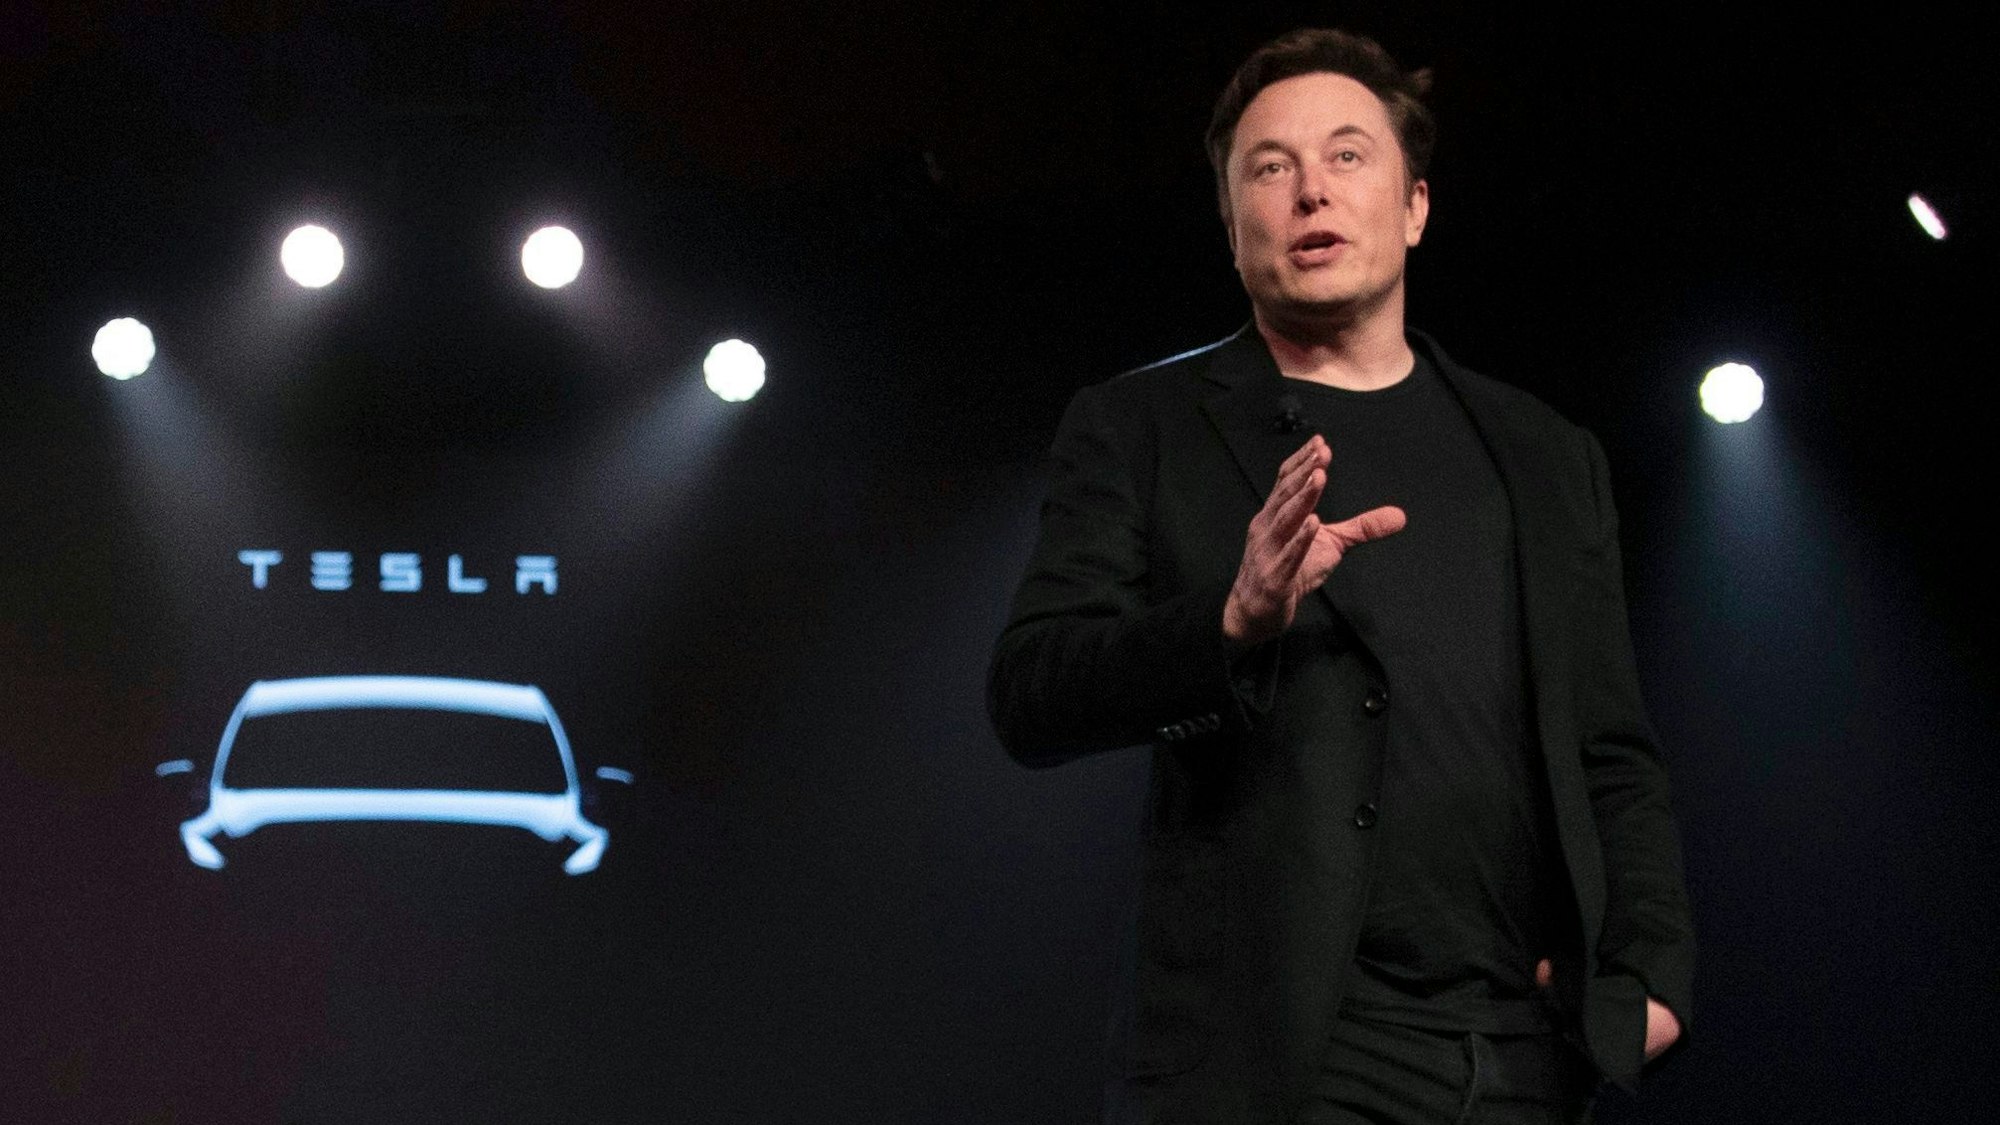 FILE - Tesla CEO Elon Musk 2019 bei der Präsentation eines neues Tesla-Modells auf der Bühne. Das Tesla-Logo ist im Hintergrund zu sehen.